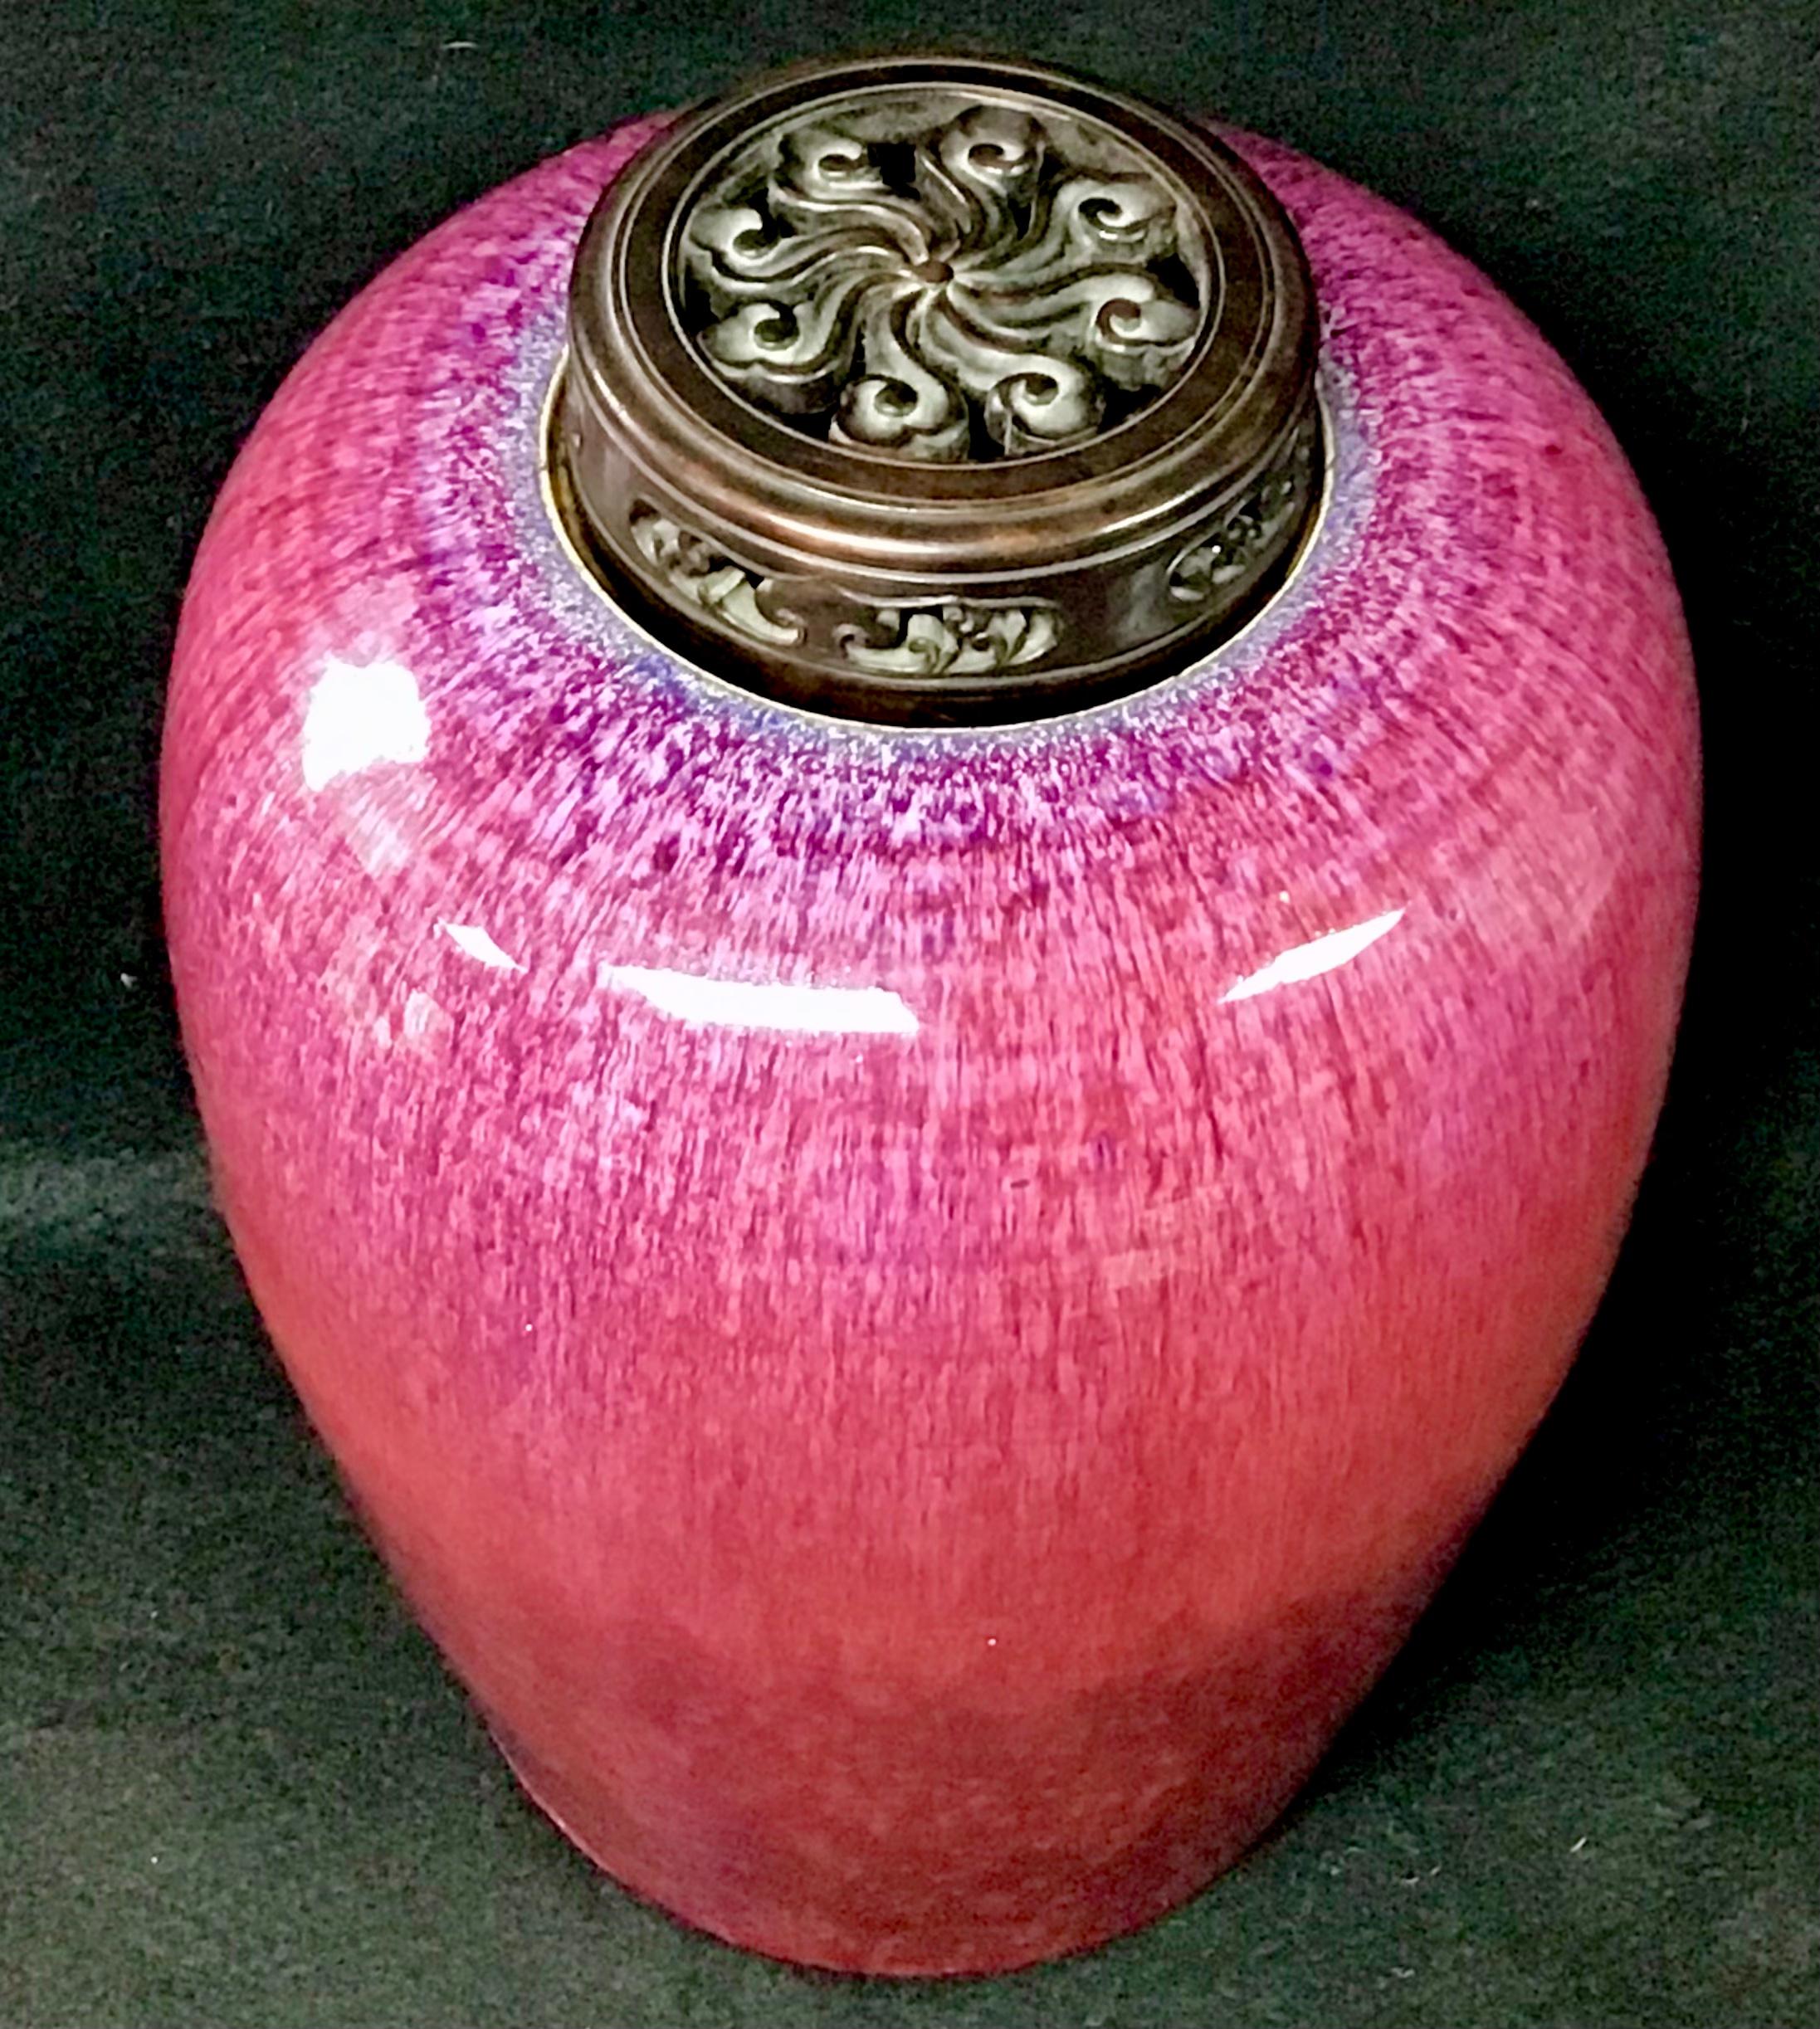 Pot à gingembre ovale chinois en forme de flamme avec couvercle en bois sculpté. La vaisselle flambée séduit par sa belle irrégularité et ses tons bleus et violets vibrants. Ces couleurs striées et irisées sont le résultat de matériaux métalliques